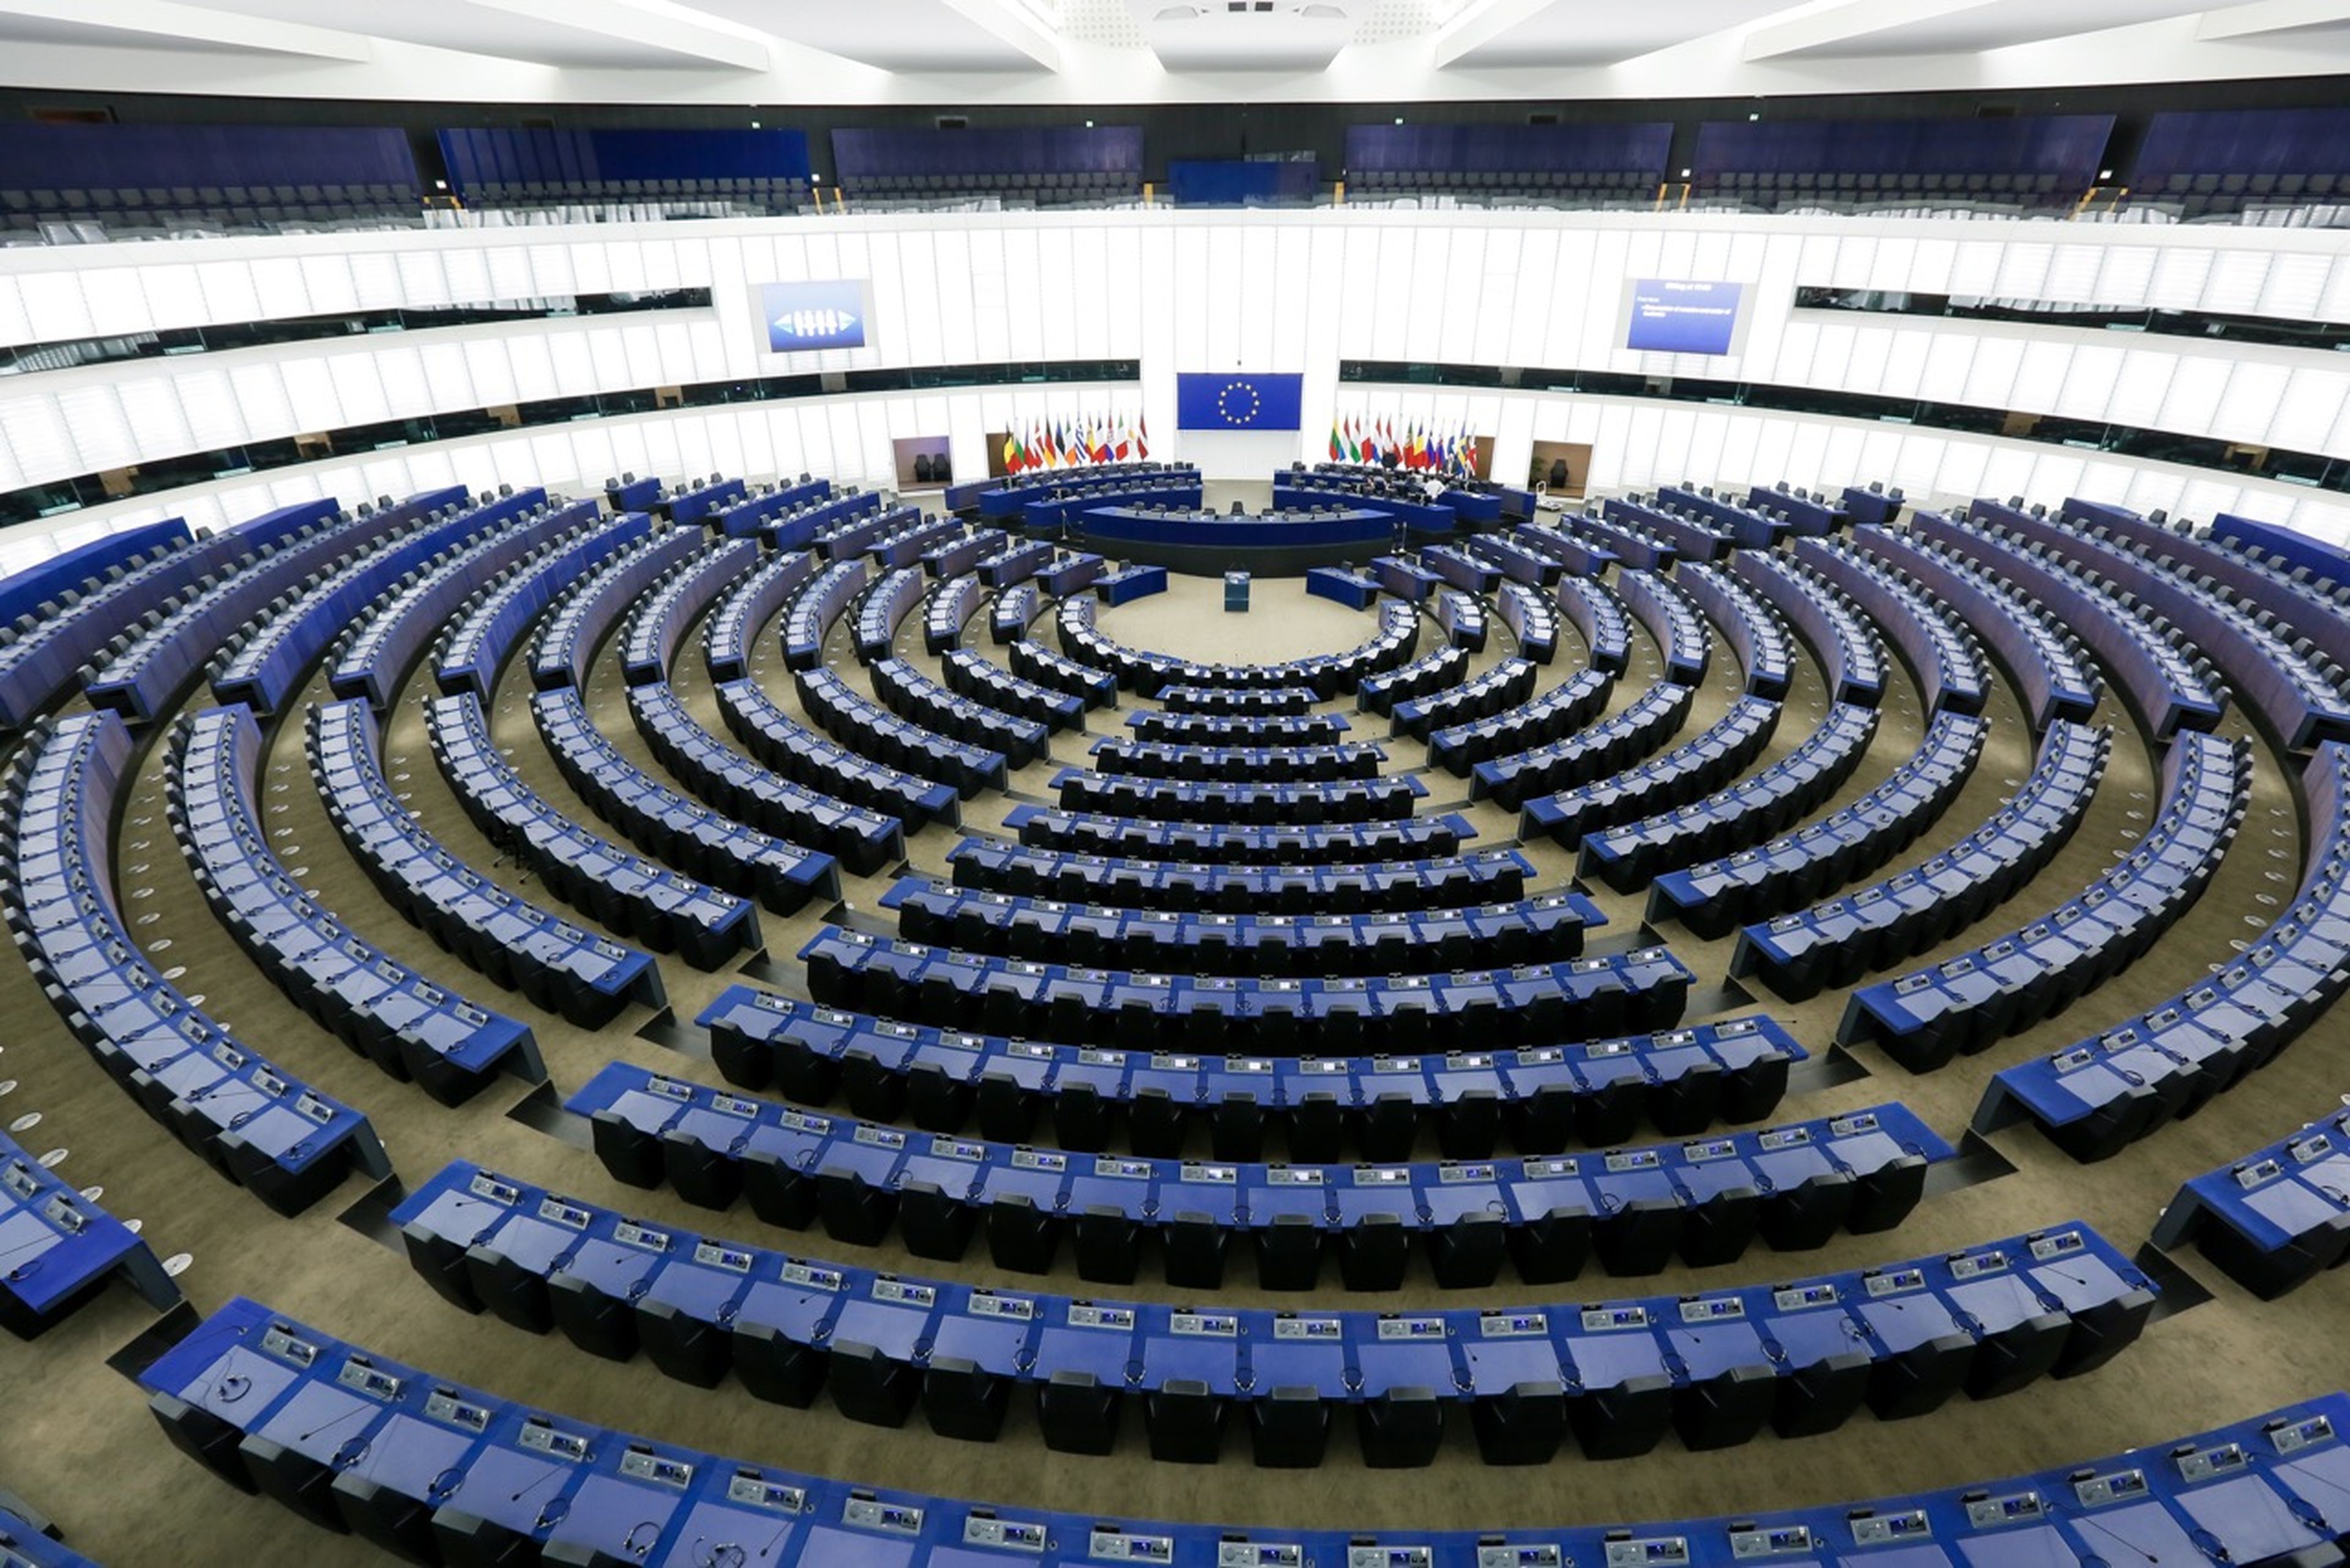 Uno de los dos hemiciclos del Parlamento Europeo: este es el que corresponde a la sede de Estrasburgo.